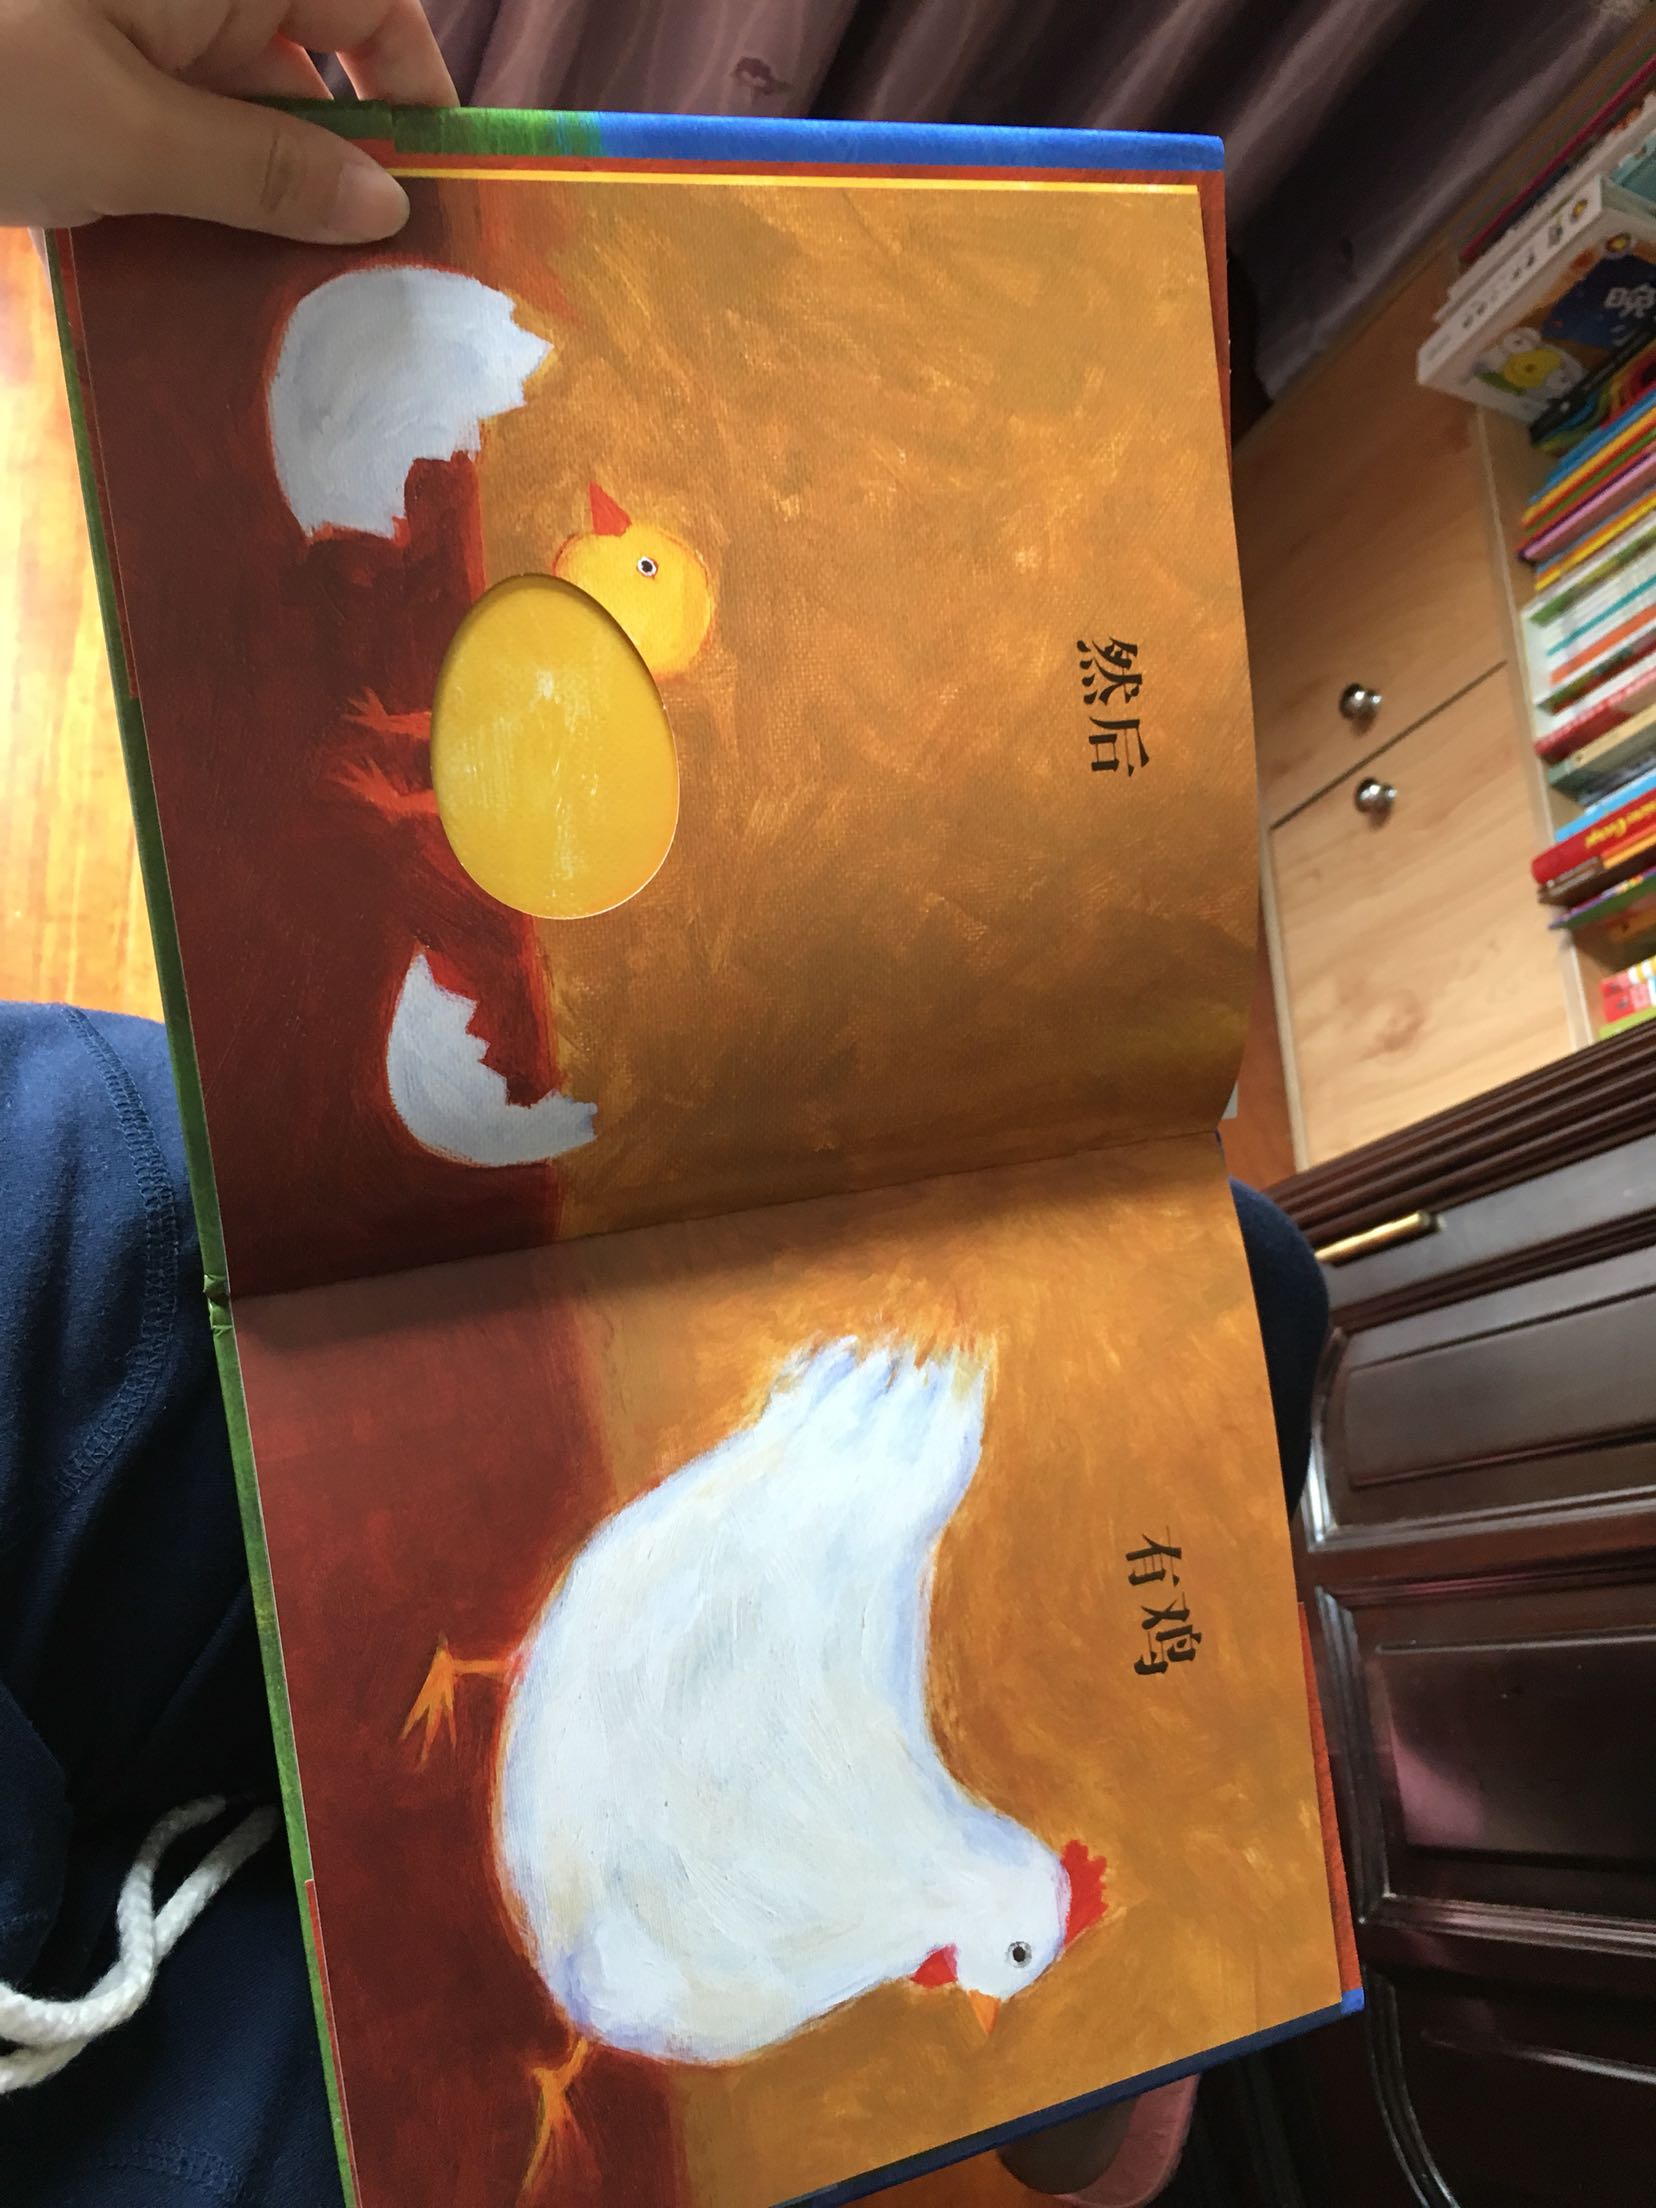 先有鸡还是先有蛋，这是一个争论不休的问题，和孩子一起看这本绘本吧，找找答案